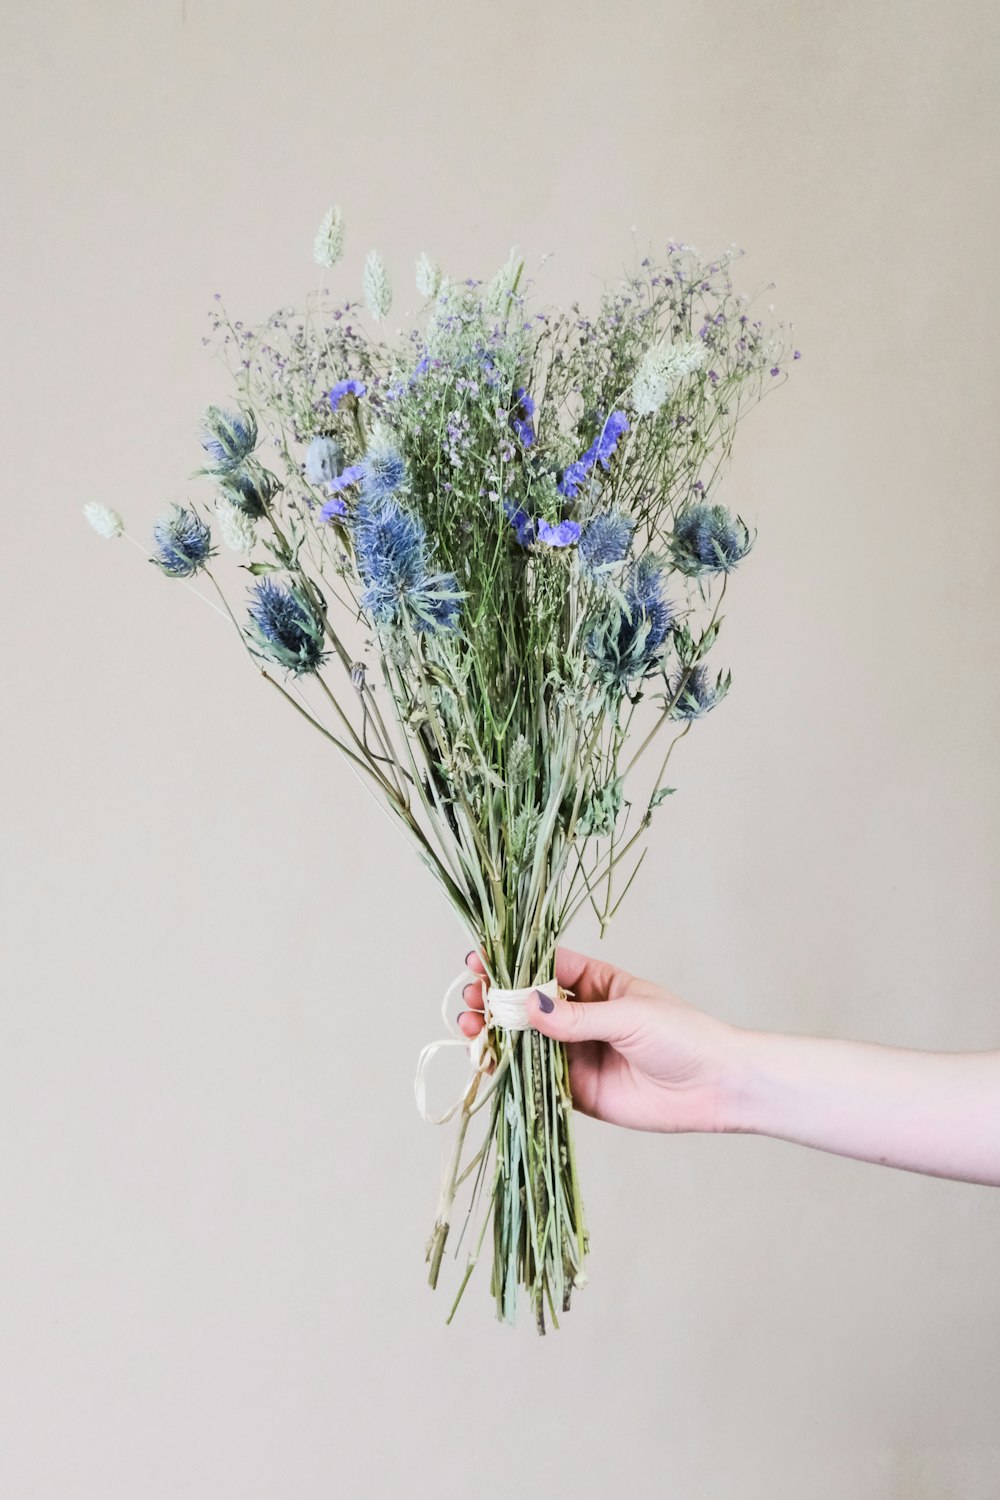 человек, держащий в руках синие и белые цветы